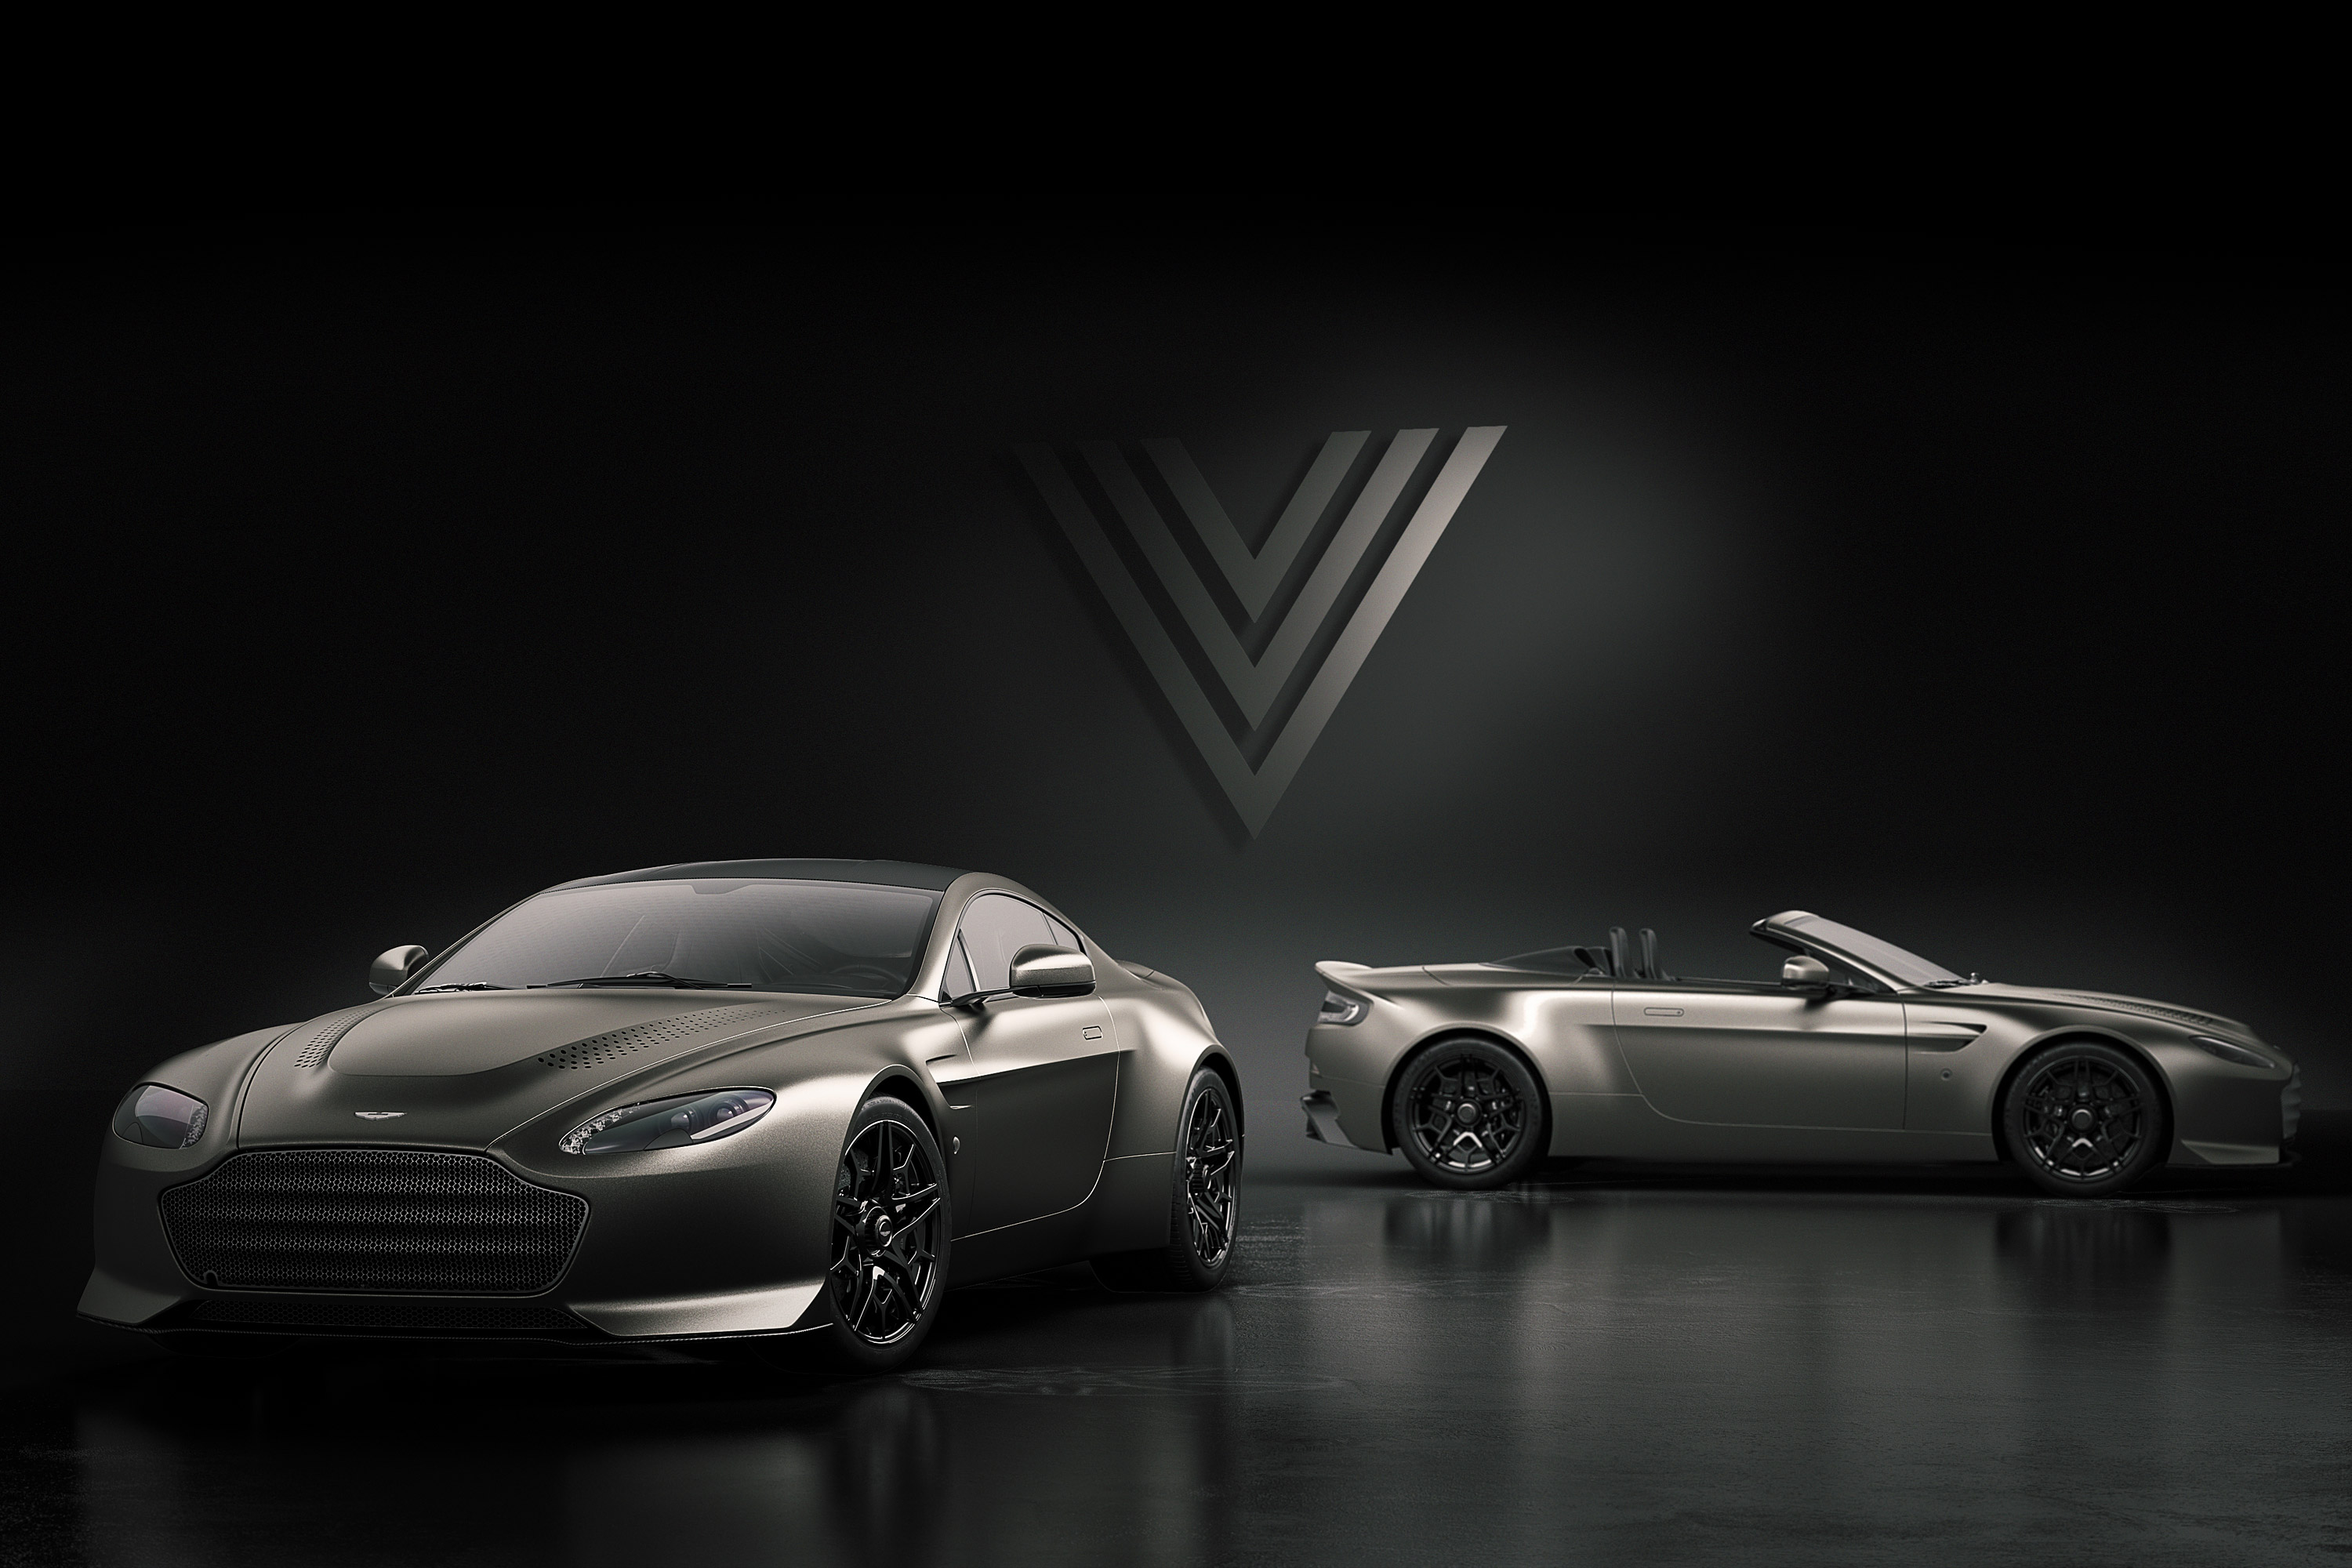 Descarga gratuita de fondo de pantalla para móvil de Aston Martin, Coche, Convertible, Gran Turismo, Vehículos, Coche Negro, Coupé, Aston Martin V12 Vantage V600.